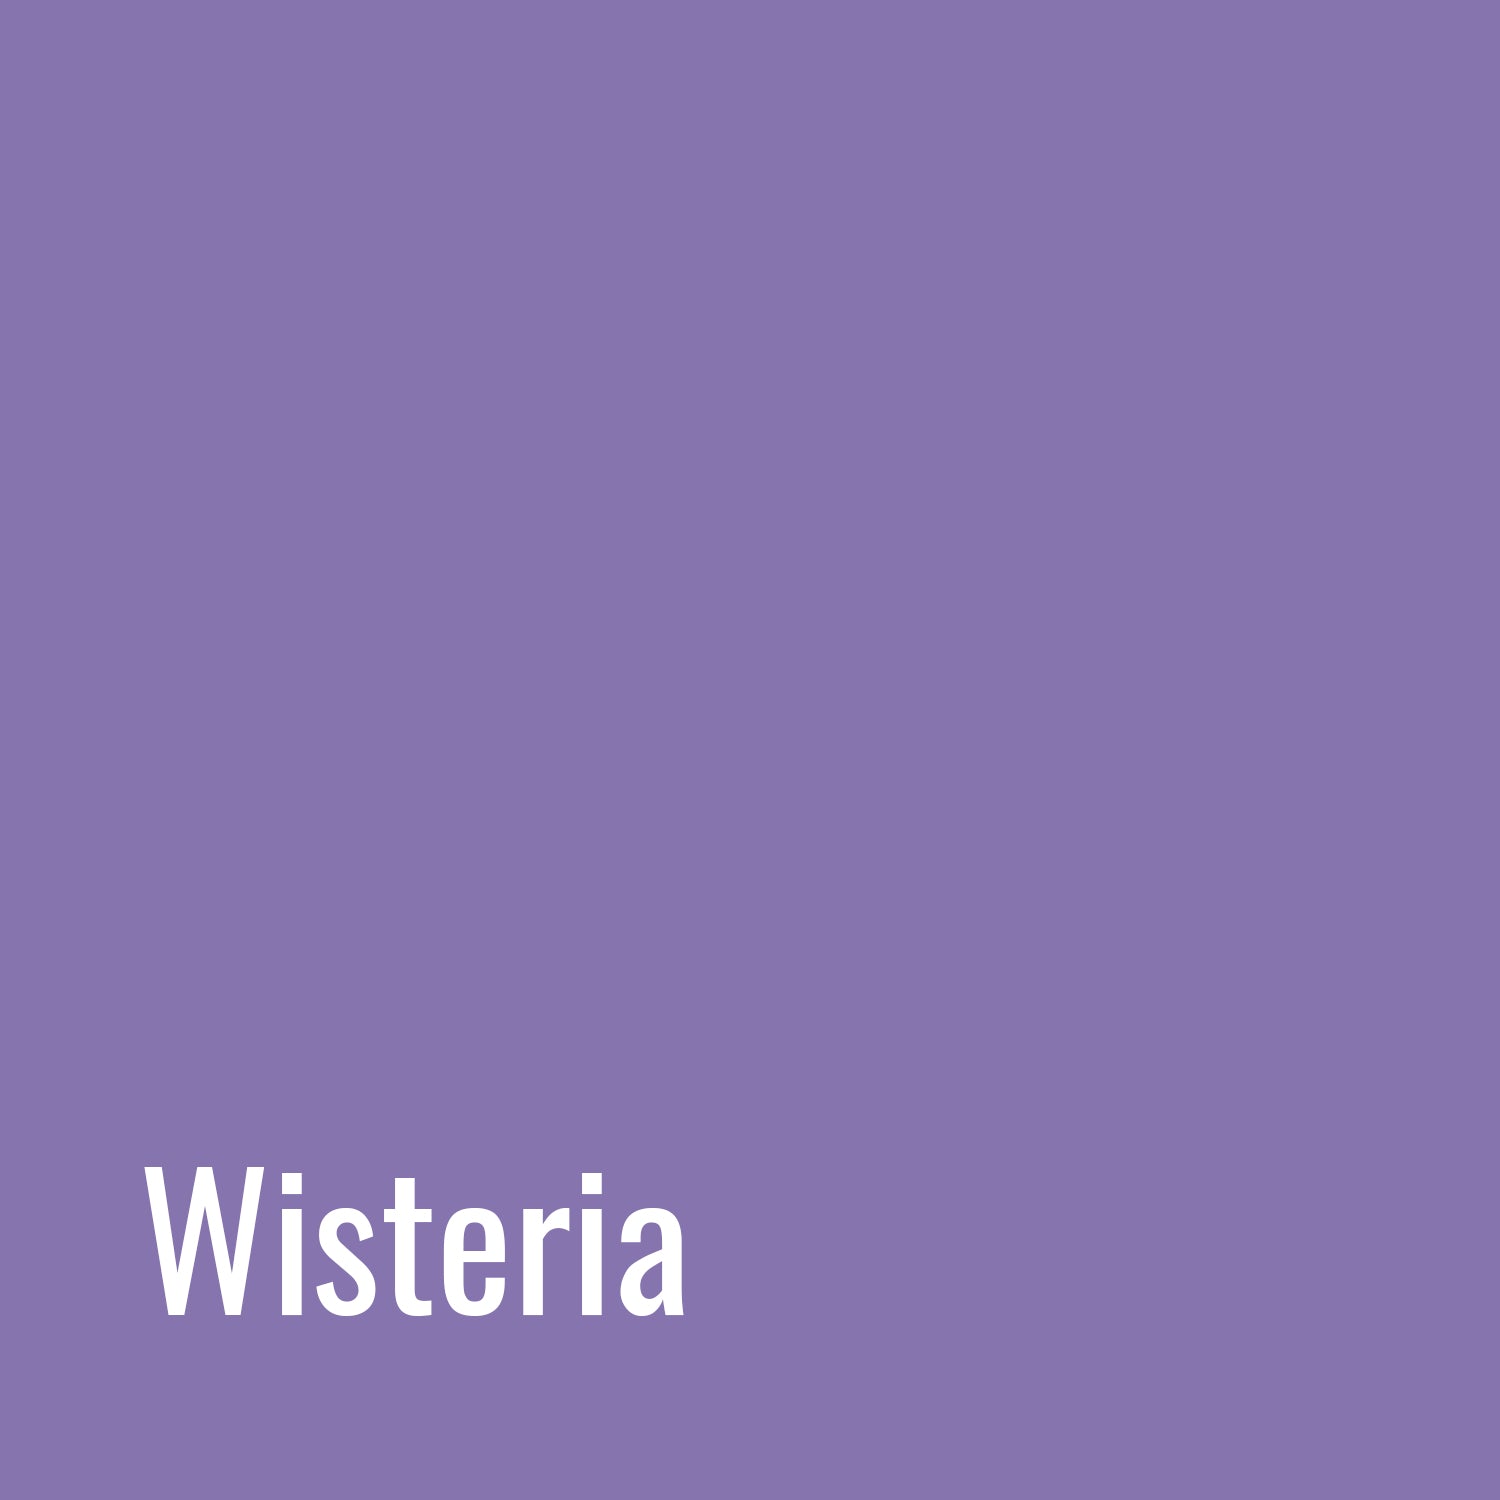 Wisteria codes